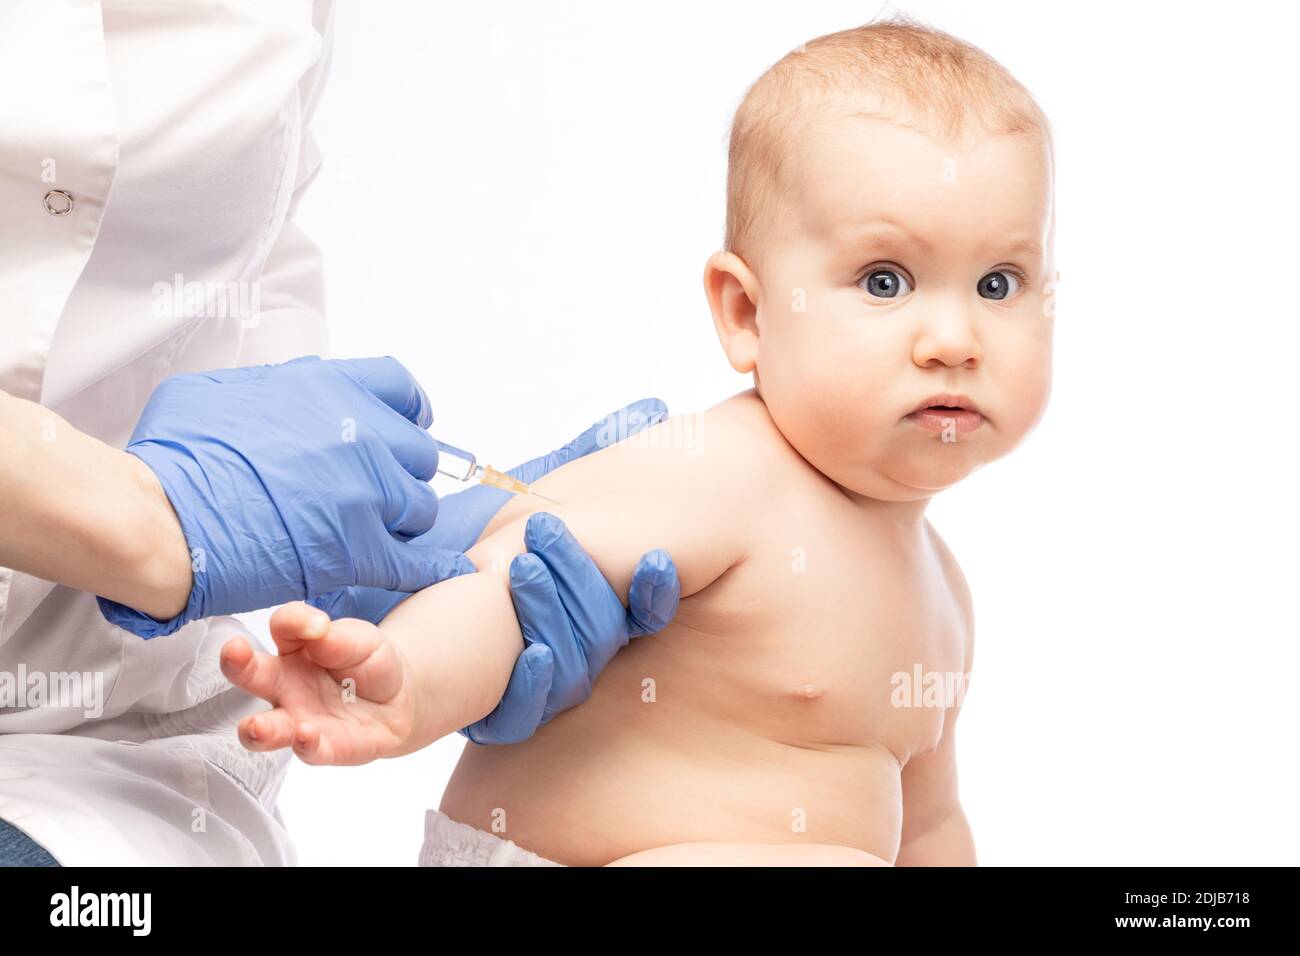 Pédiatre ou infirmière donnant une injection intramusculaire d'un vaccin Au bras d'une petite fille pendant la pandémie de coronavirus COVID-19 Banque D'Images